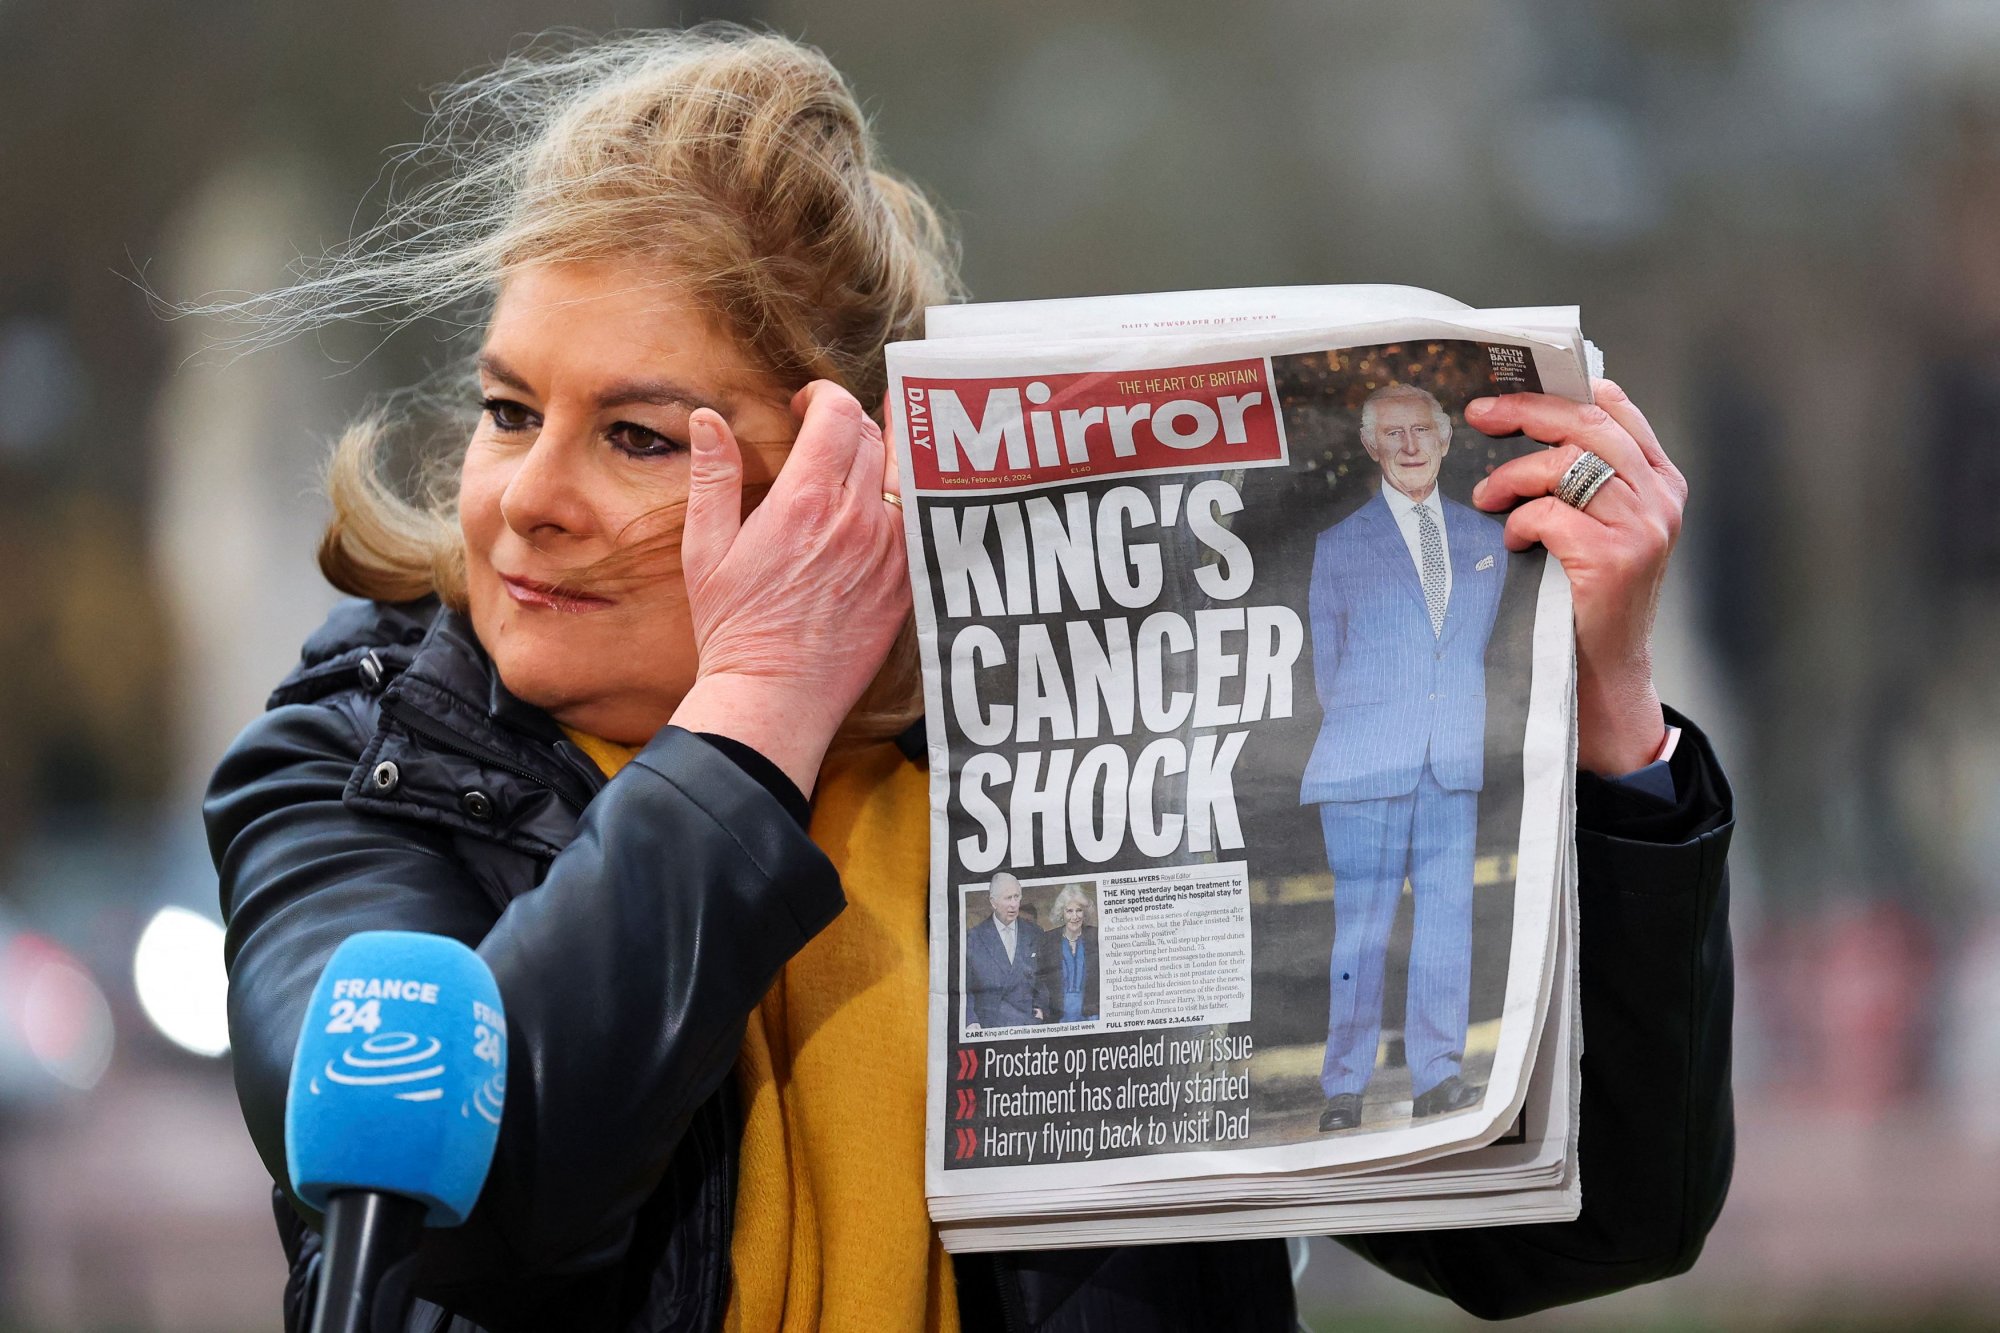 Βασιλιάς Κάρολος: Η διάγνωση με καρκίνο έχει συγκλονίσει τη Βρετανία - Σε σοκ ο βρετανικός Τύπος